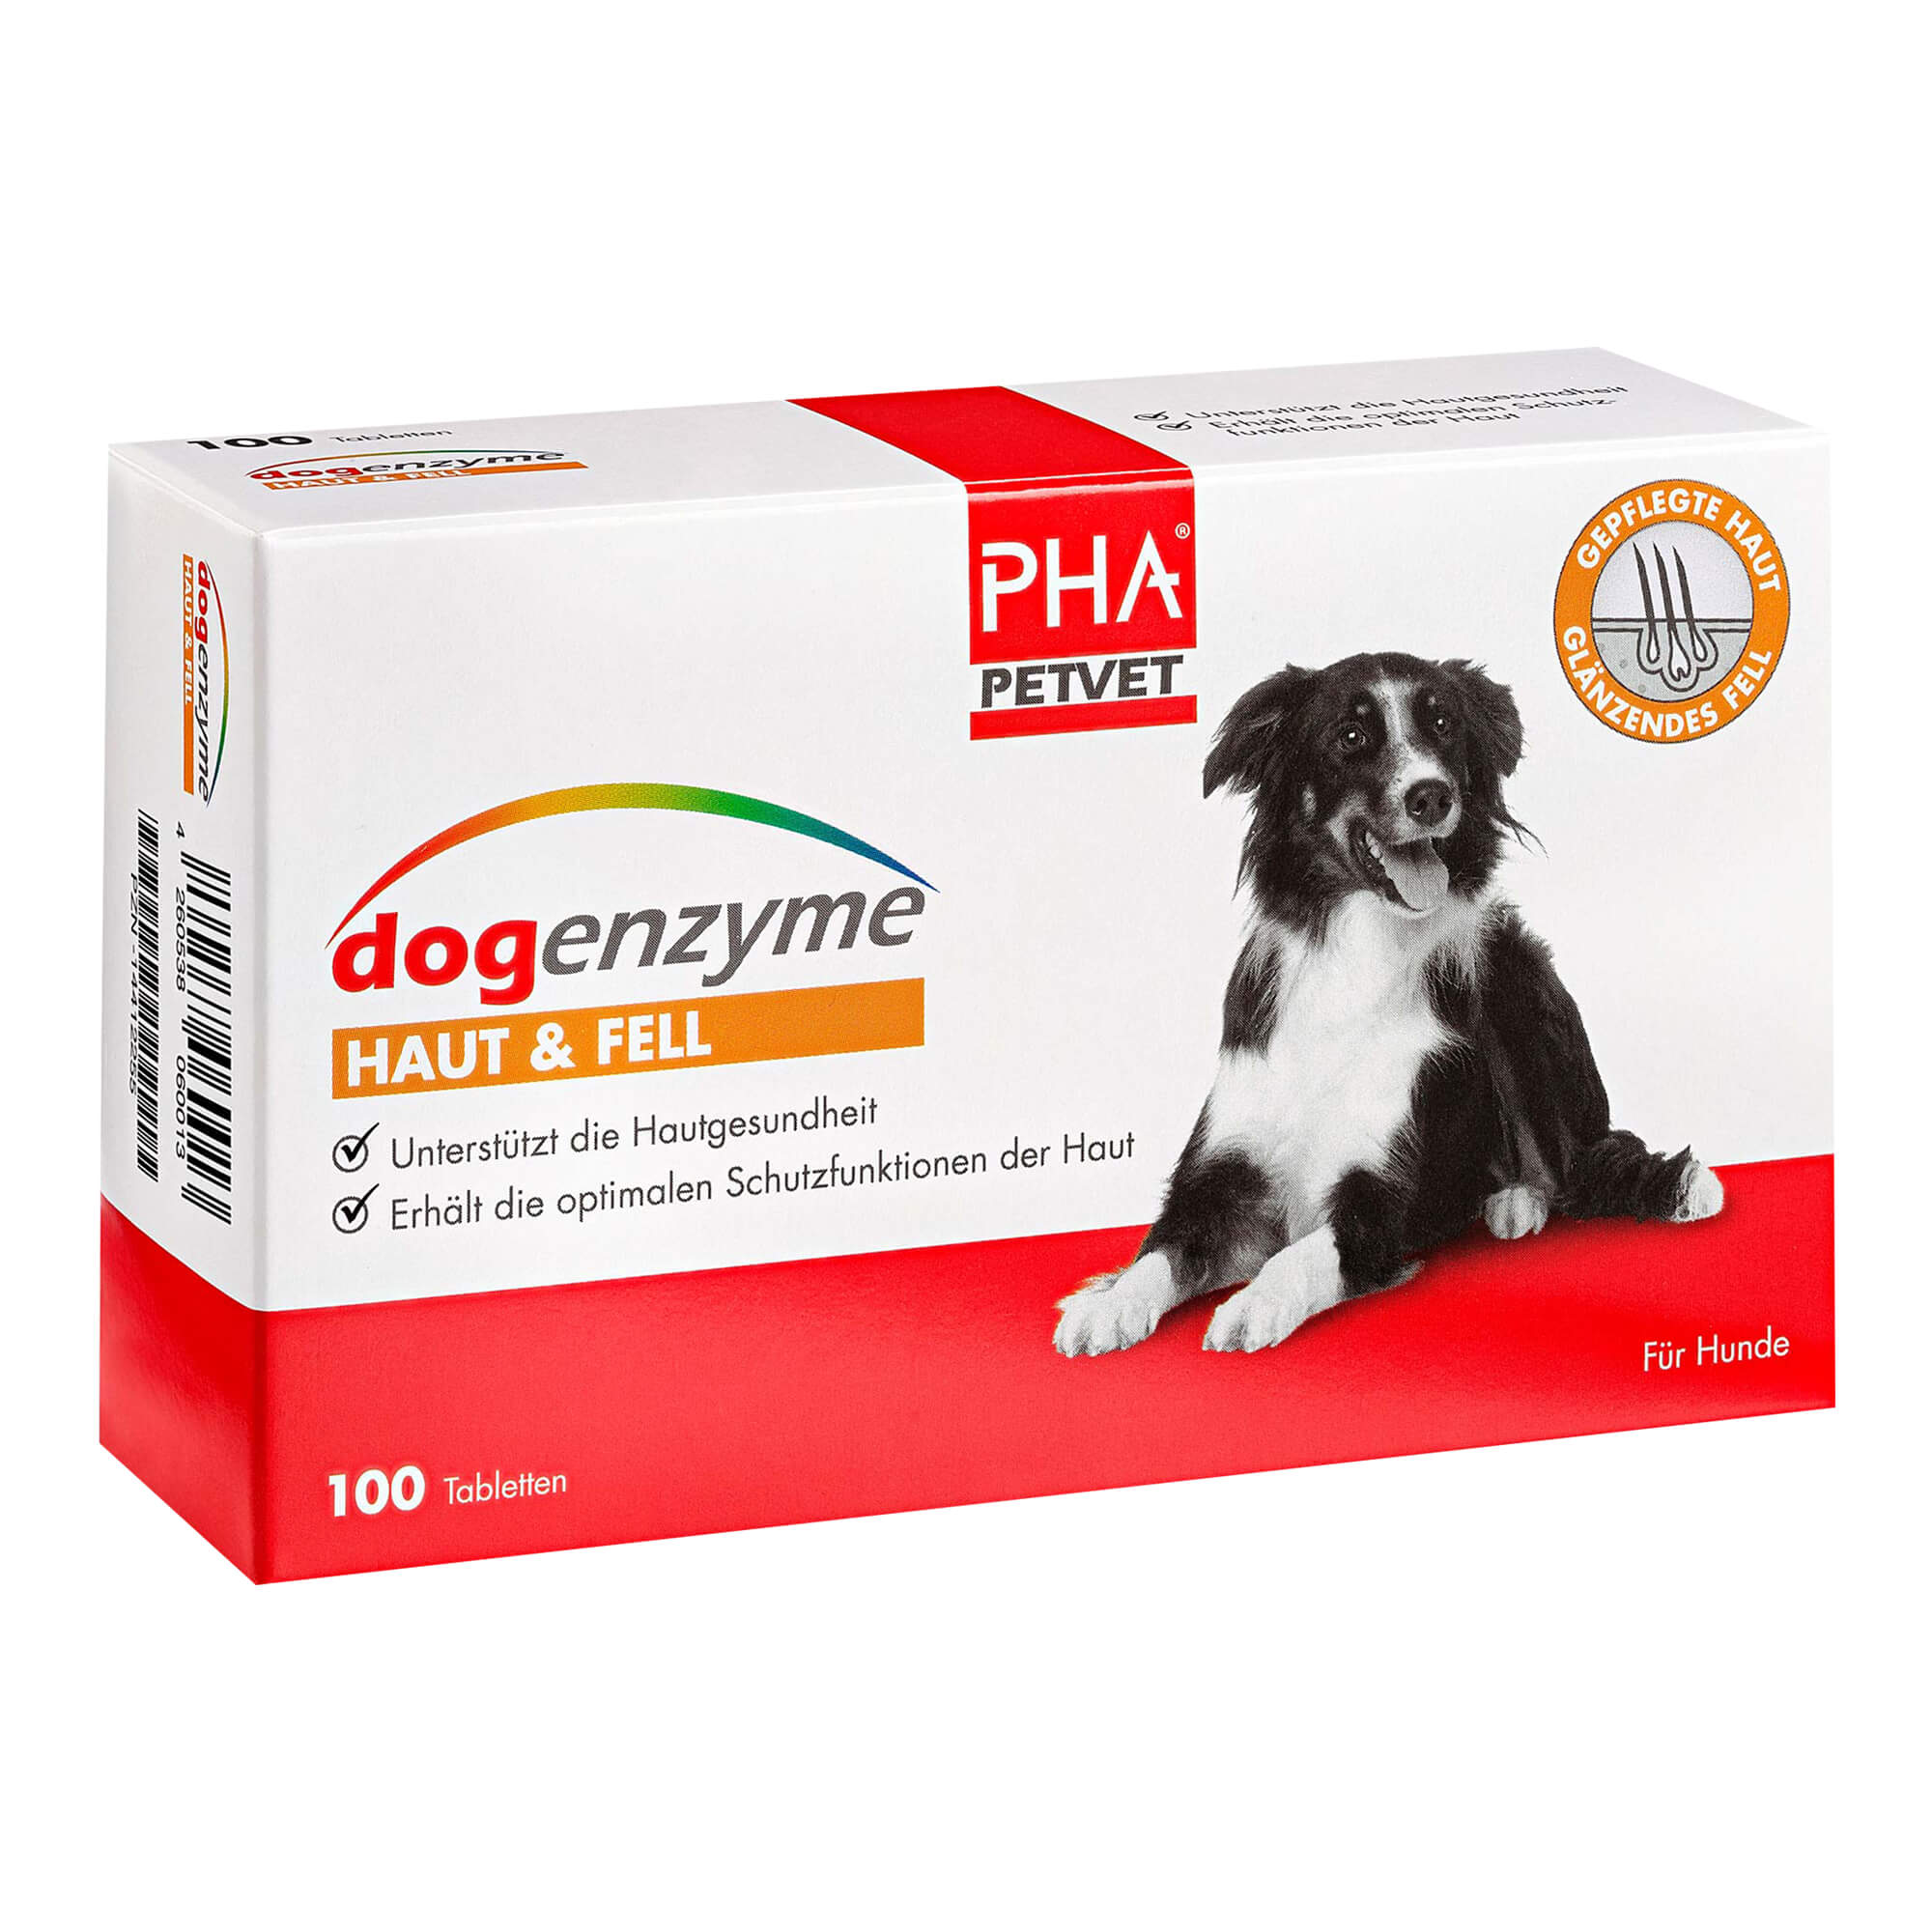 Enzymkombinationspräparat für den Erhalt und die Unterstützung der normalen Hautfunktion des Hundes.